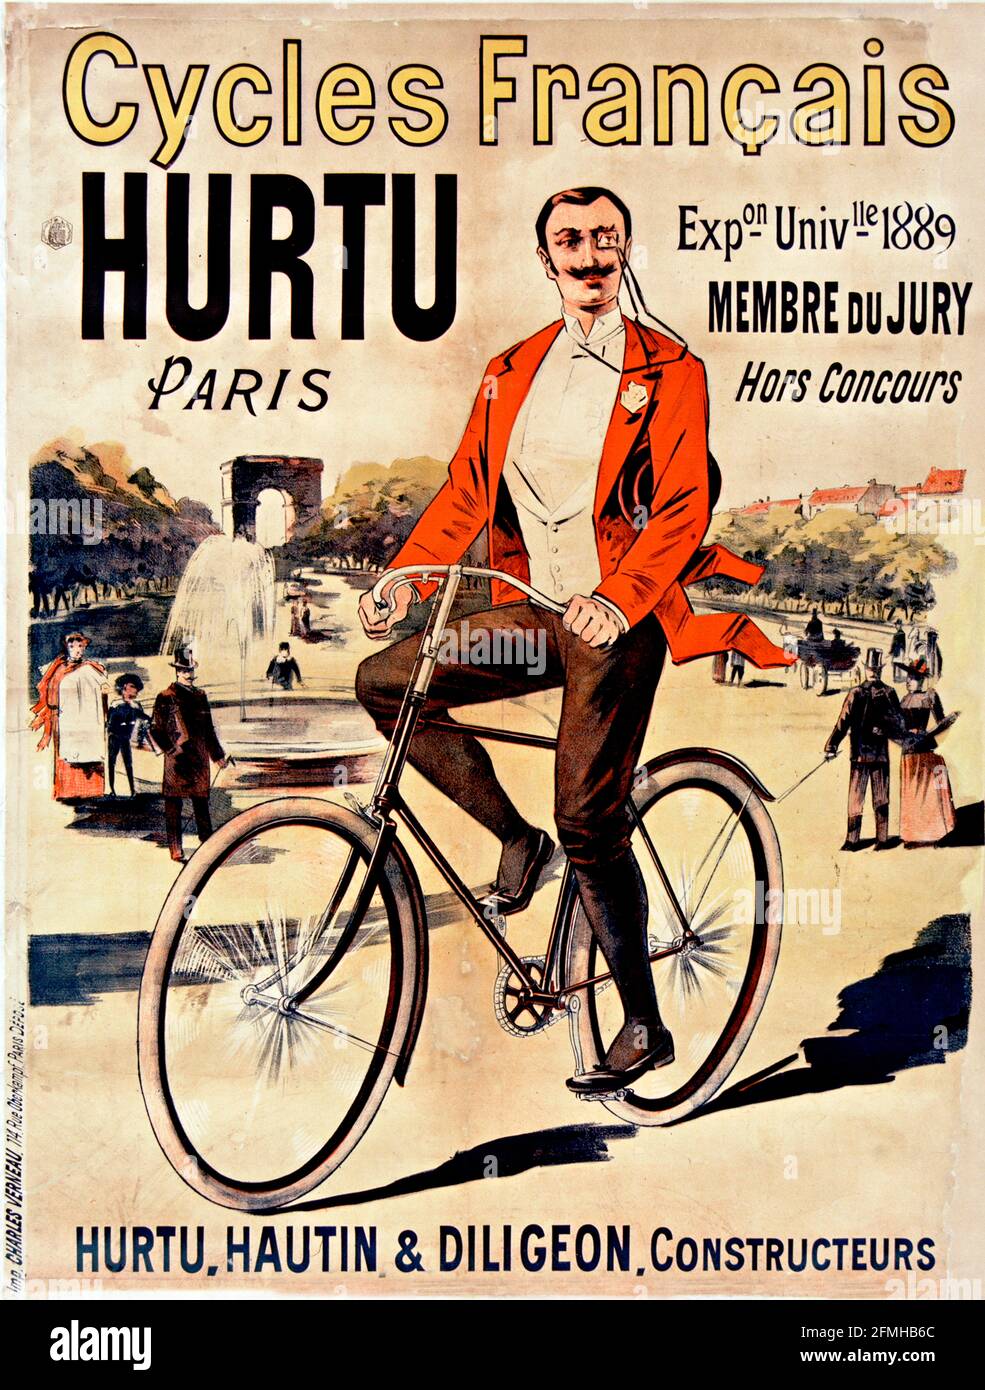 Eugène Ogé - Zyklen Français Hurtu 1889. Fahrradwerbeposter. Alt und vintage. Digital verbessert. Sehr hohe Auflösung. Stockfoto